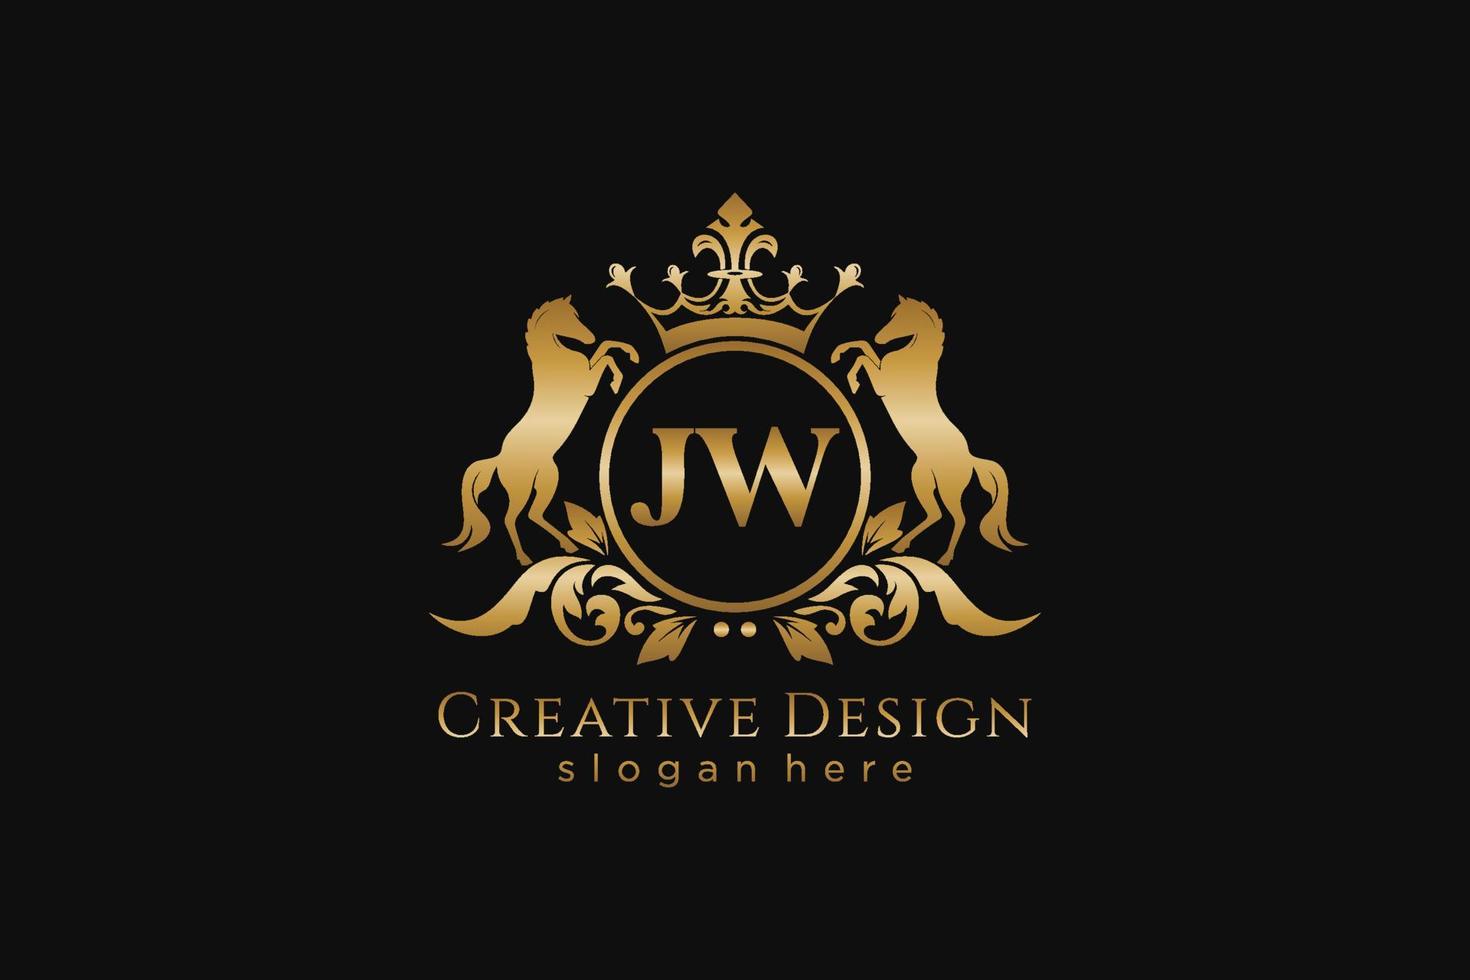 crista dourada retro jw inicial com círculo e dois cavalos, modelo de crachá com pergaminhos e coroa real - perfeito para projetos de marca luxuosos vetor